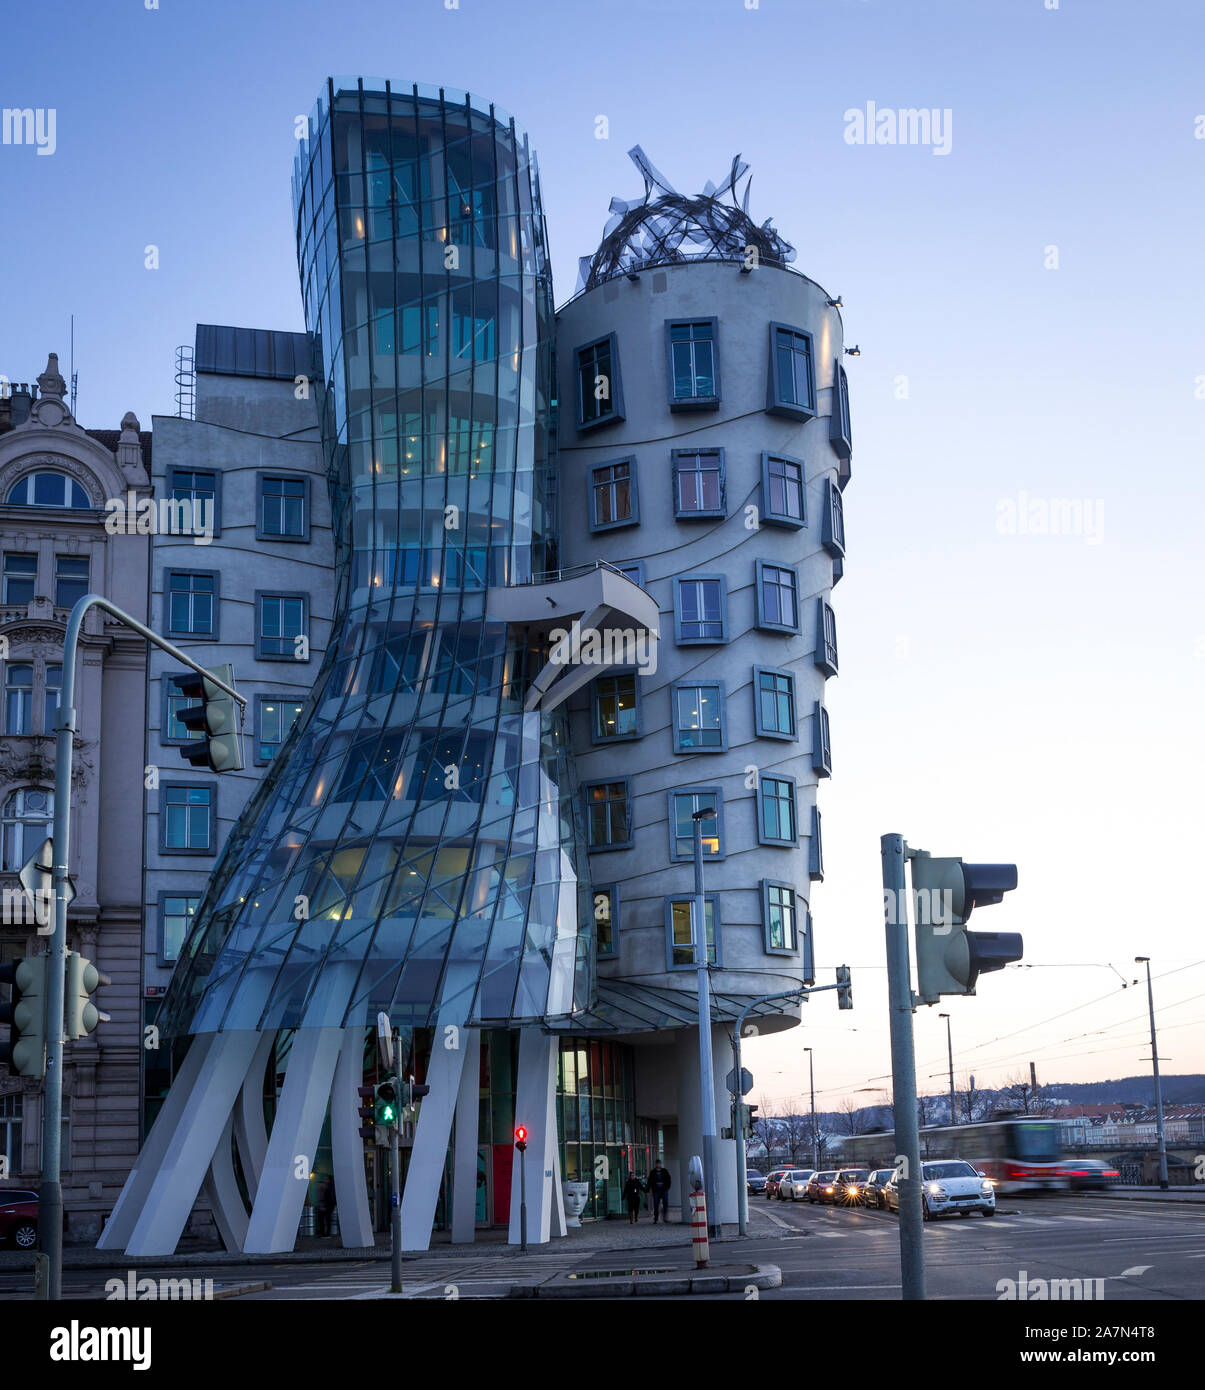 Prag - 18. Februar: Modernes Gebäude, auch bekannt als das Tanzende Haus, entworfen von Vlado Milunic und Frank O. Gehry steht auf dem Rasinovo Nabrezi. P Stockfoto